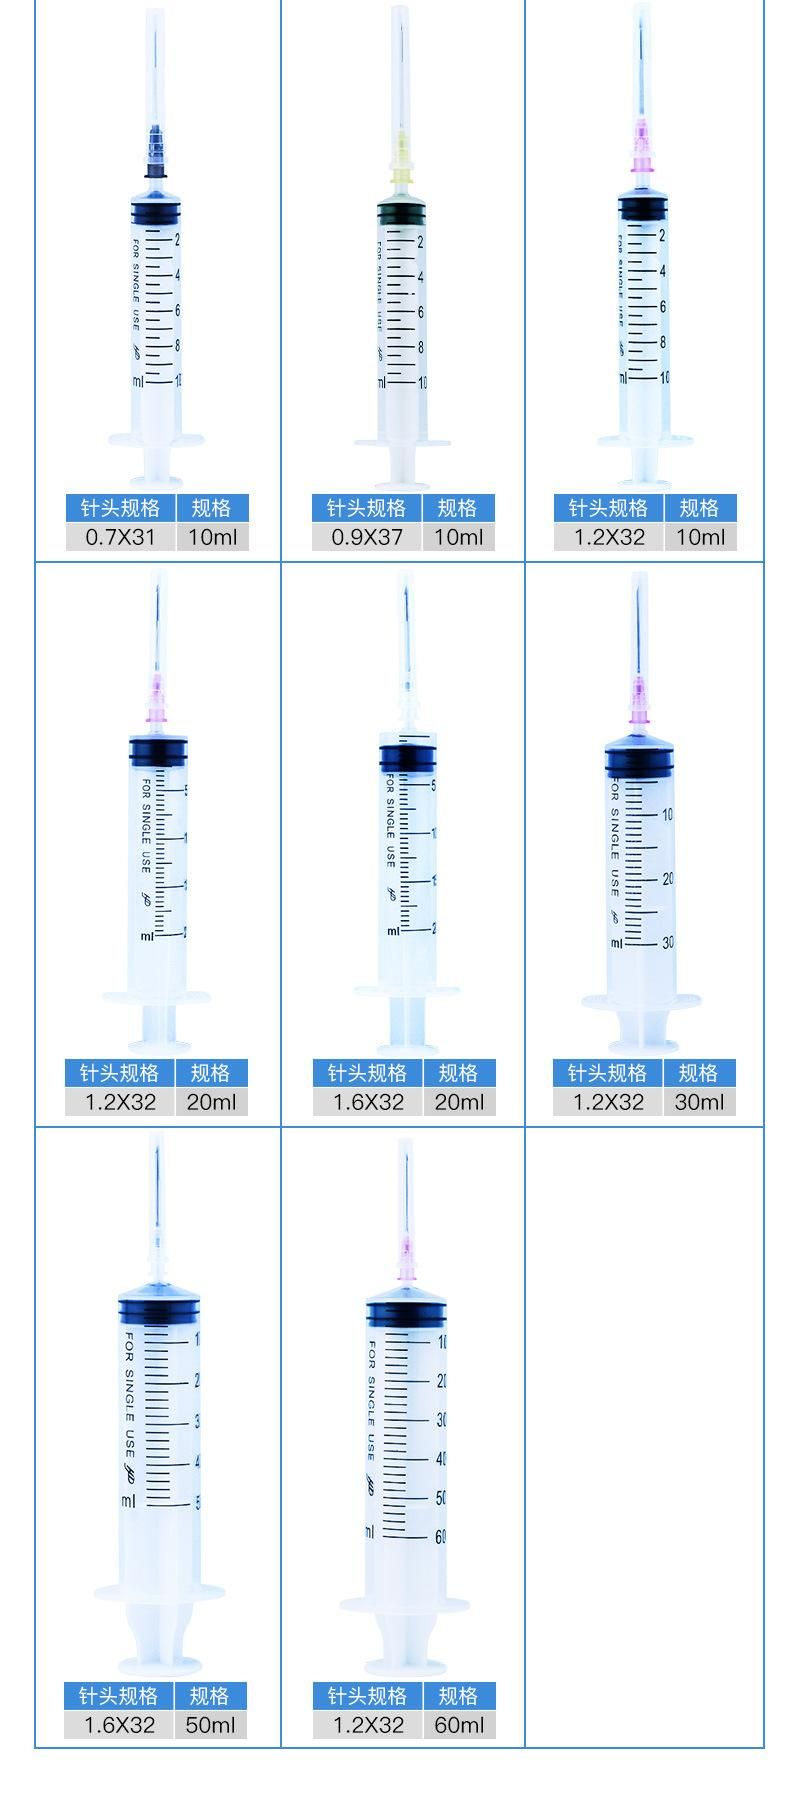 Disposable Medical Syringe Syringe Syringe Needle 10ml No. 9 Needle Sterile Injection Tube